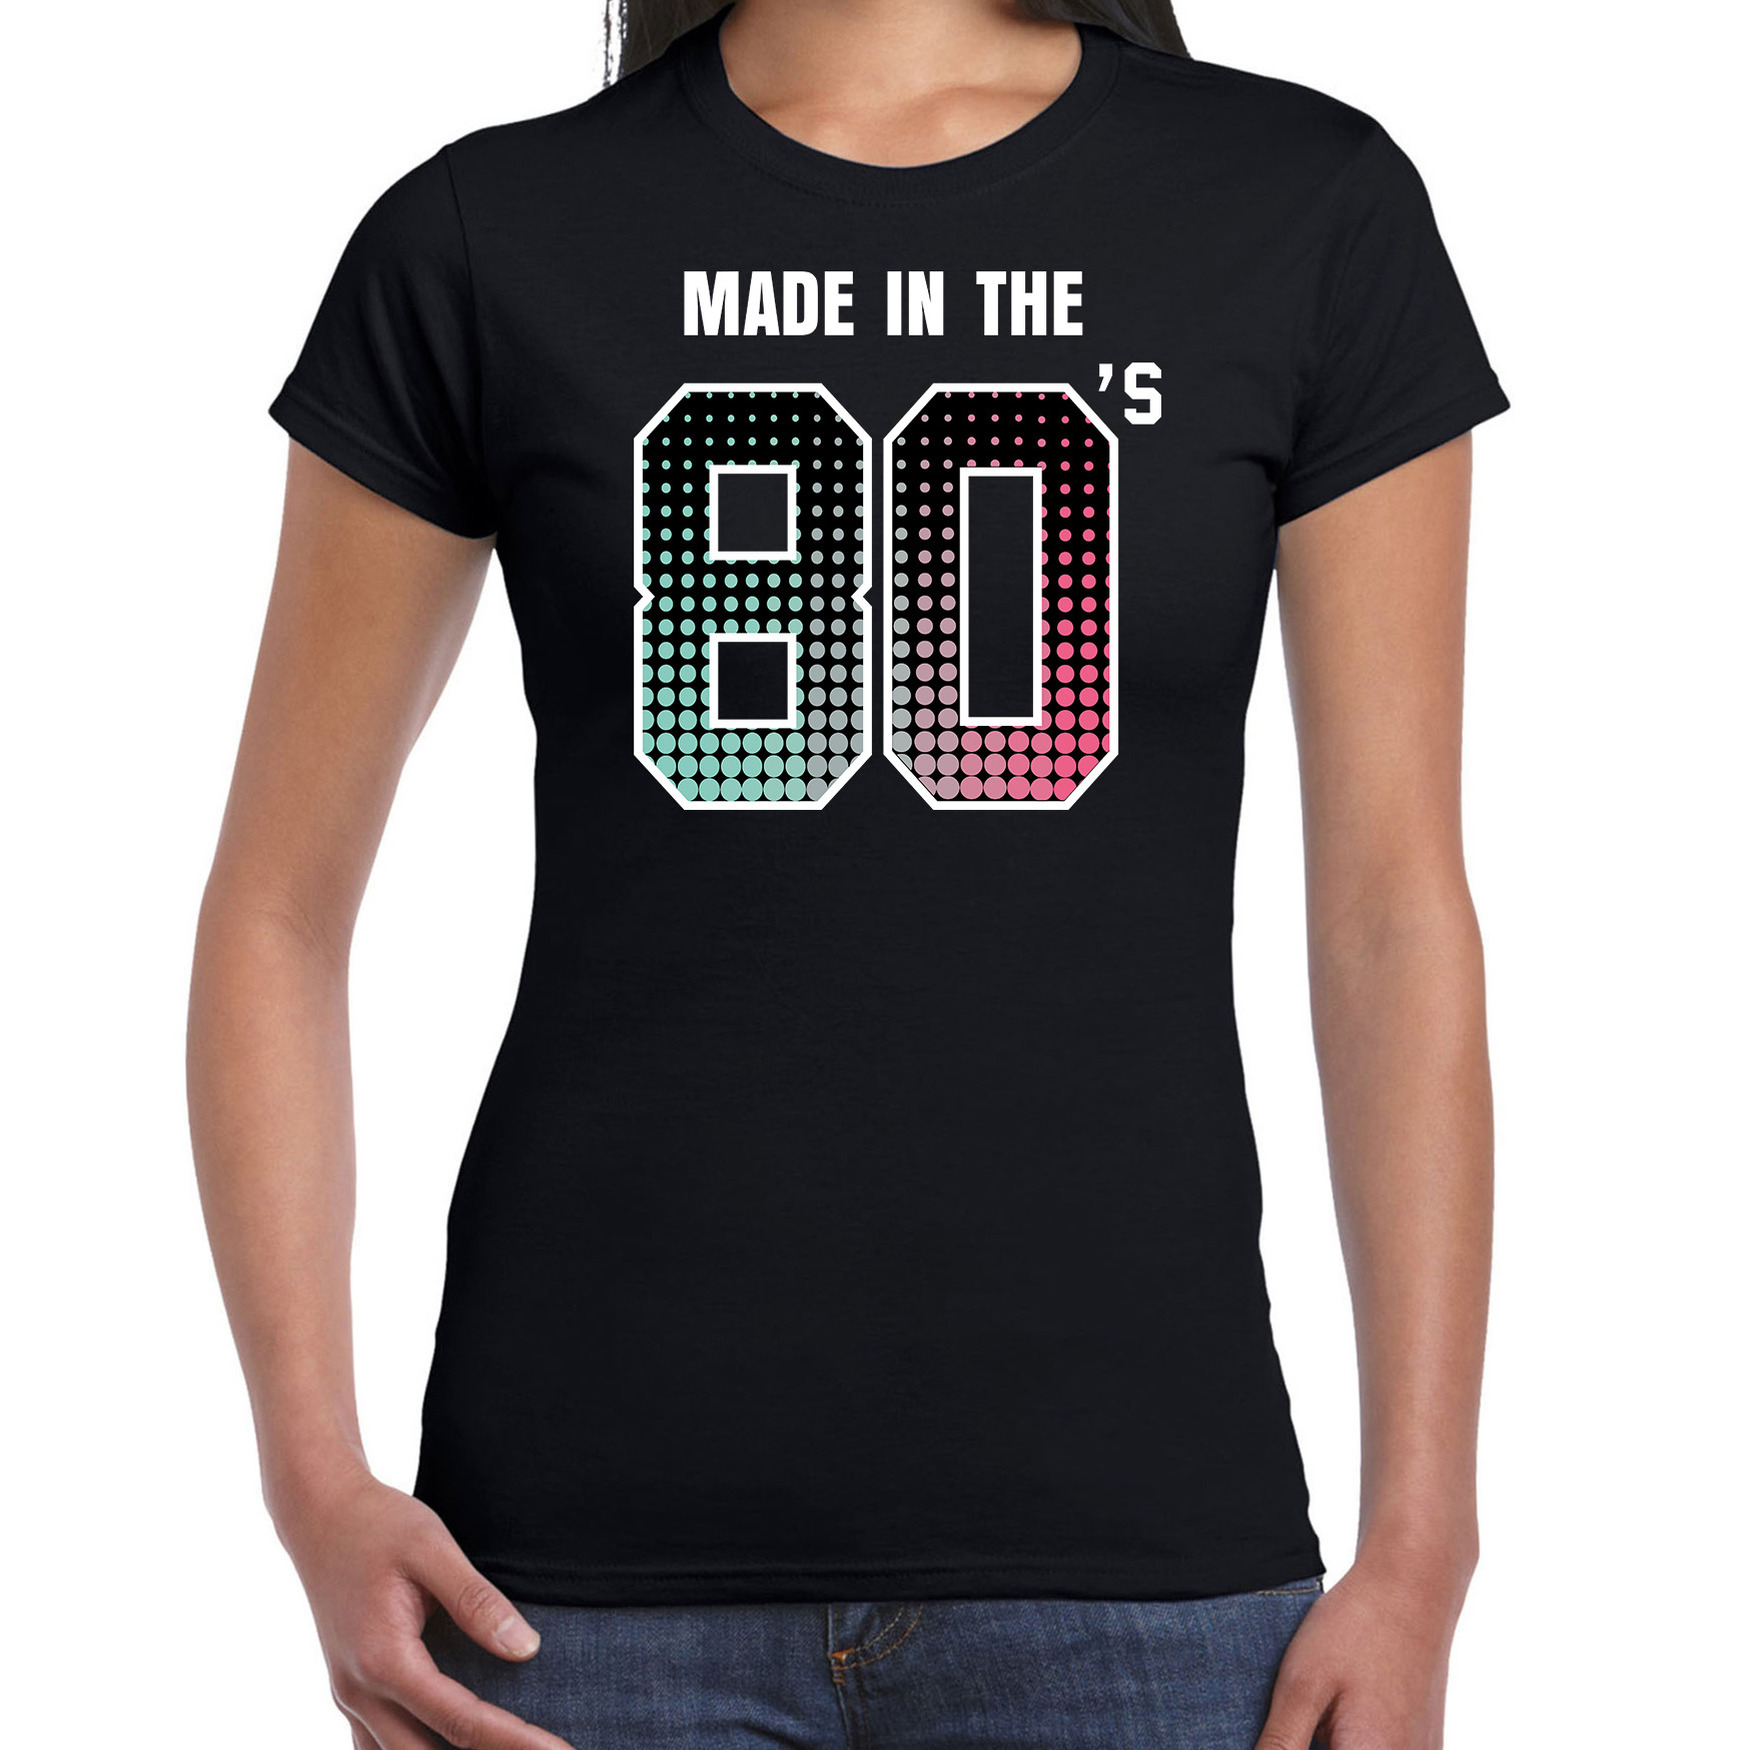 Eighties t-shirt - shirt made in the 80s - geboren in de jaren 80 zwart voor dames